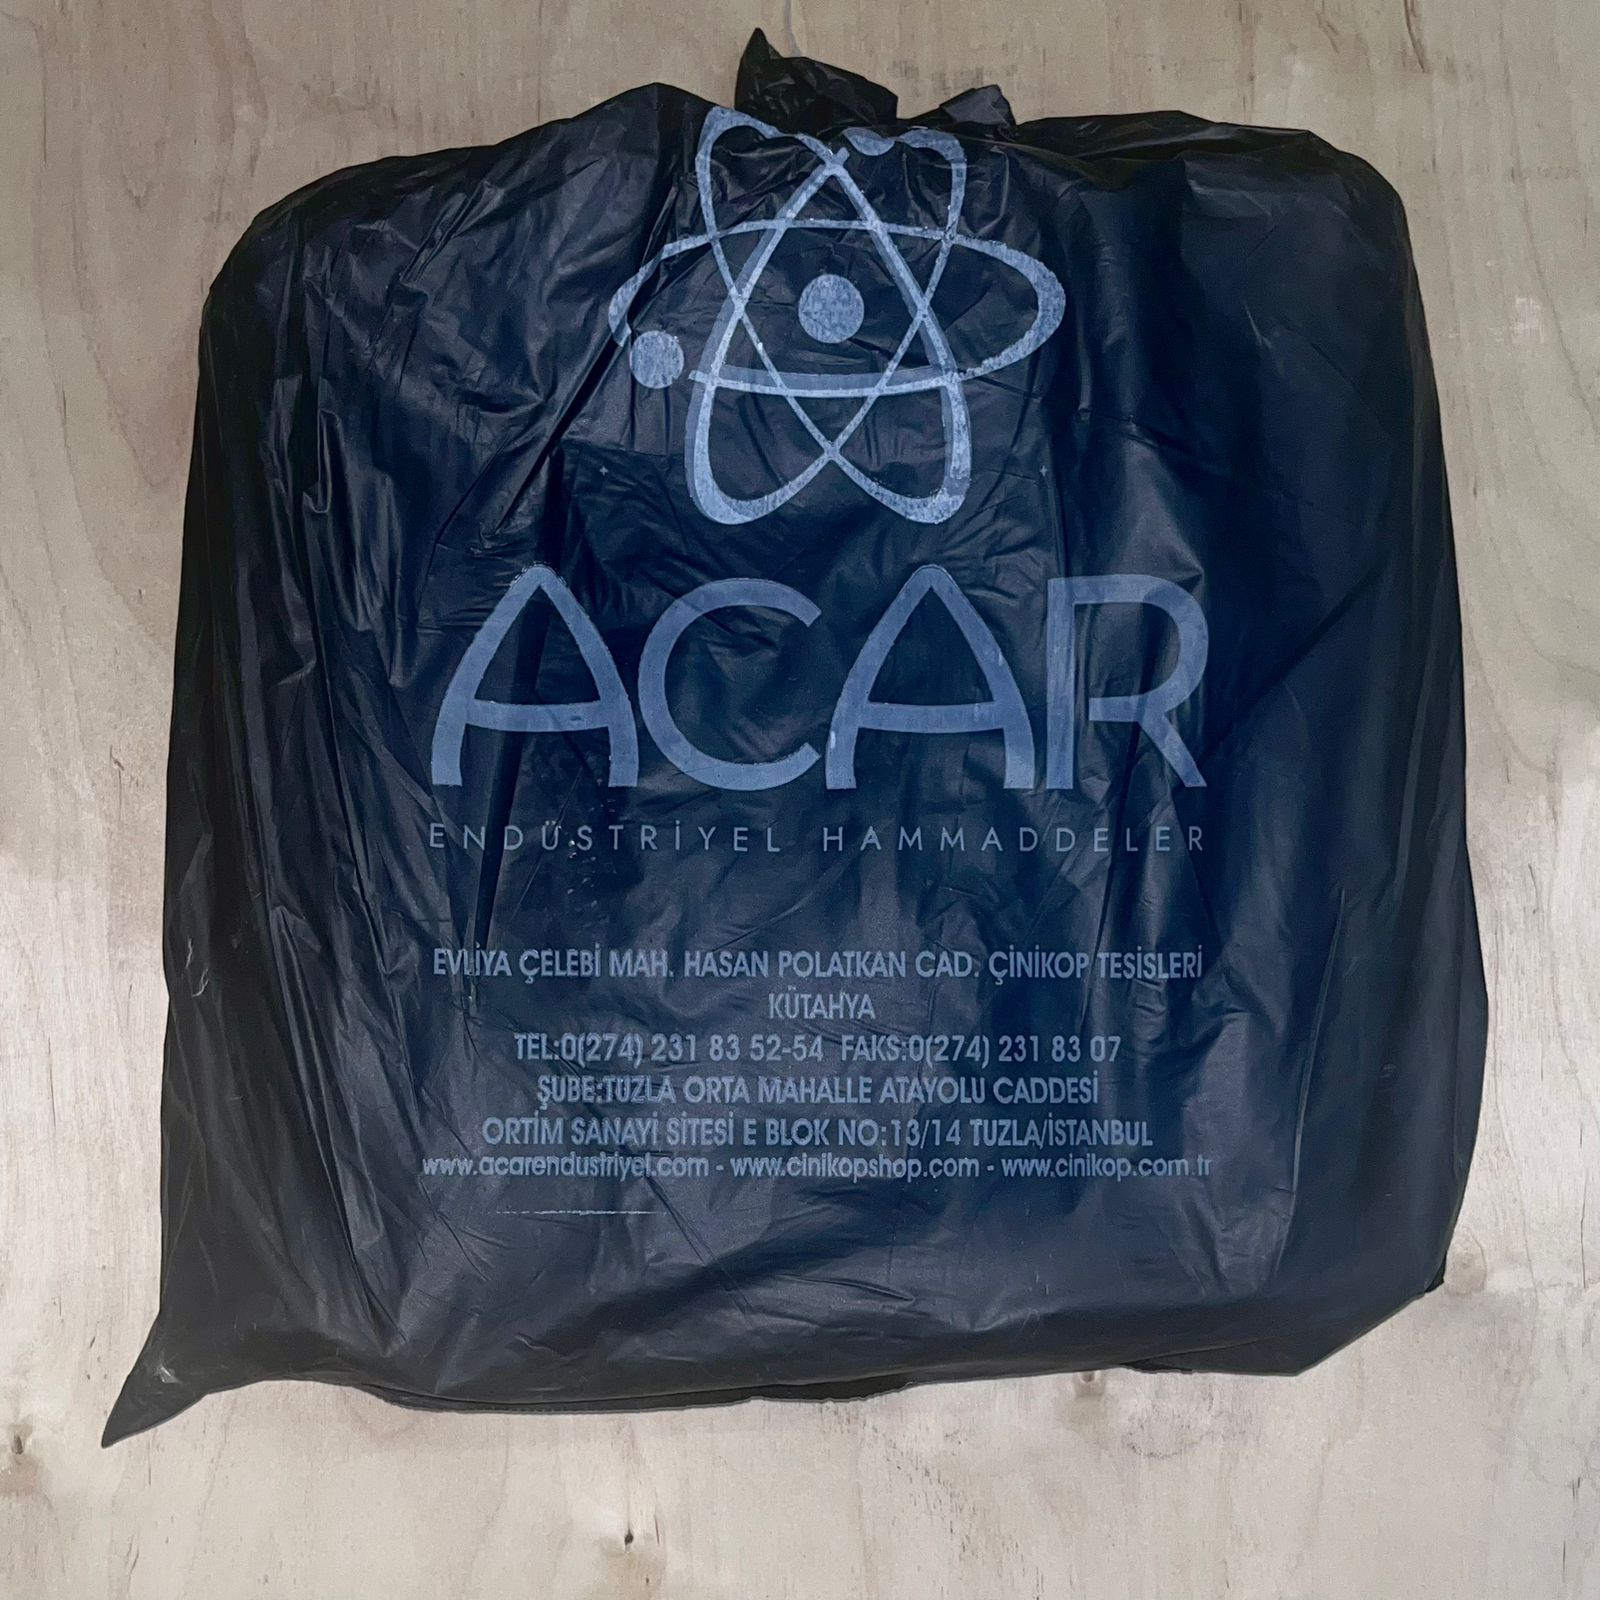 Acar ew01 pack